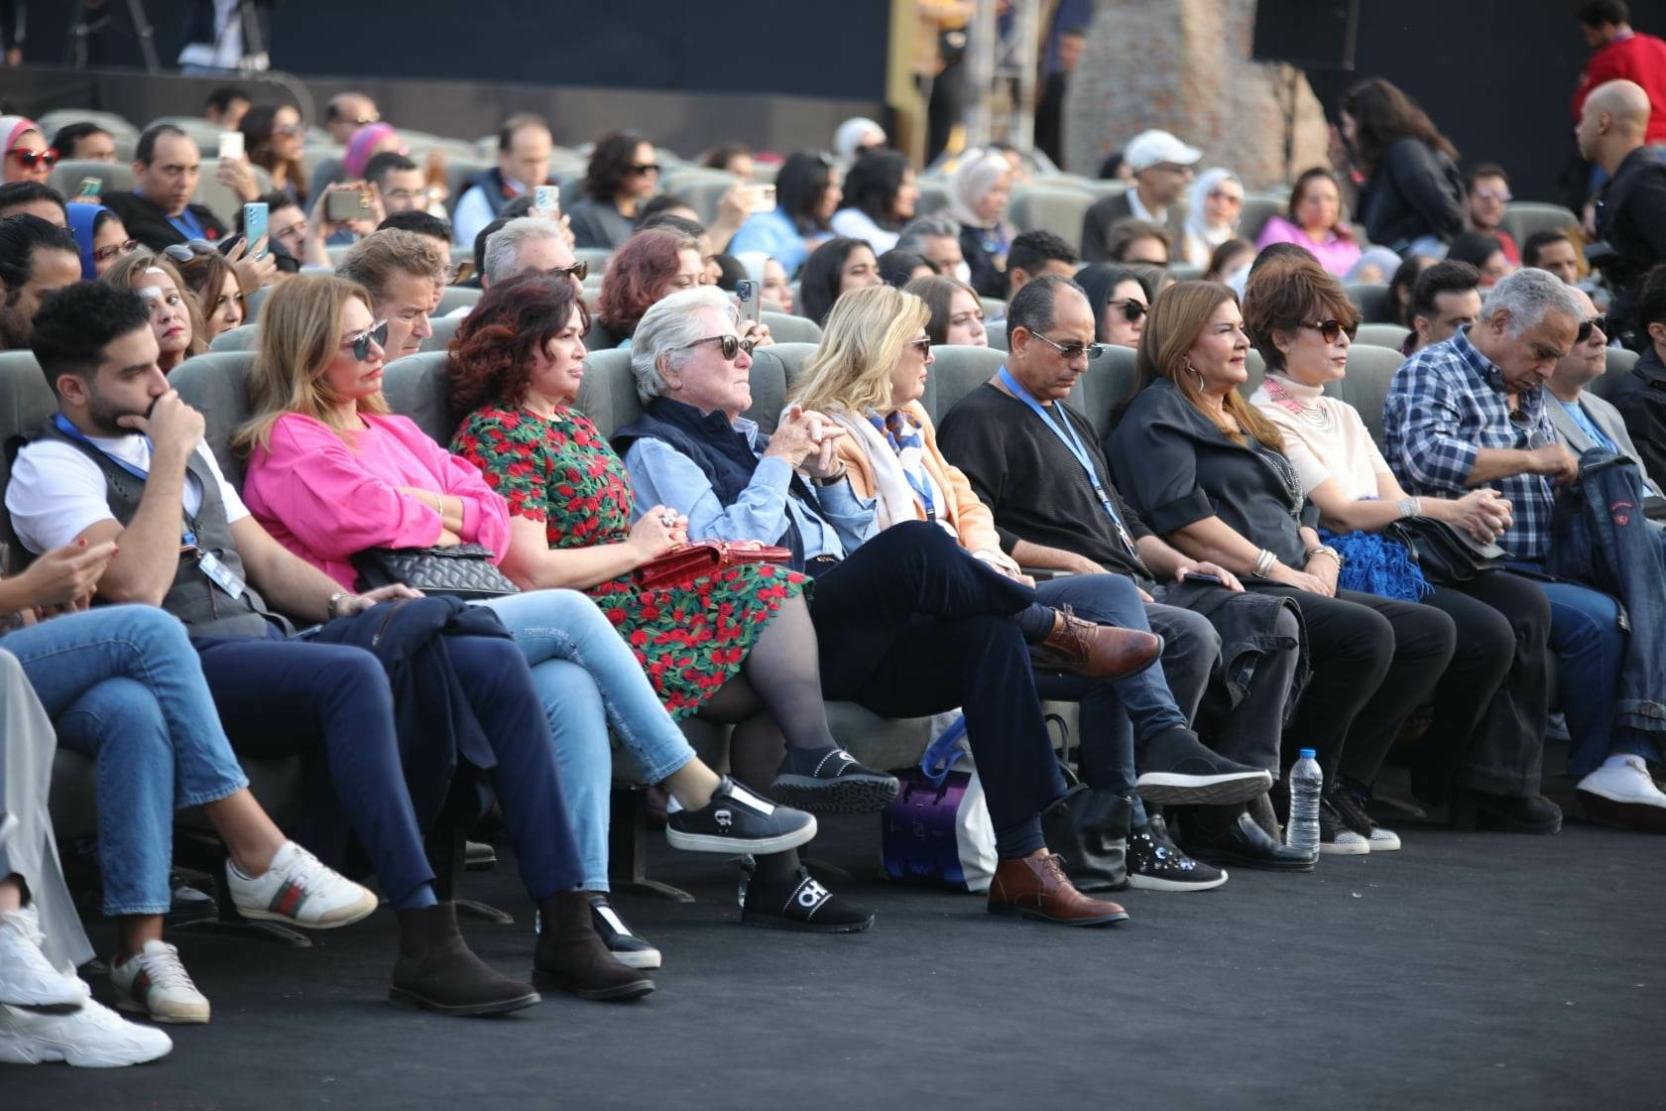 جانب من الحضور لندوة لبلبلة في مهرجان القاهرة السينمائي 44 منهم حسين فهمي رئيس المهرجان ونخبة من النجوم العرب